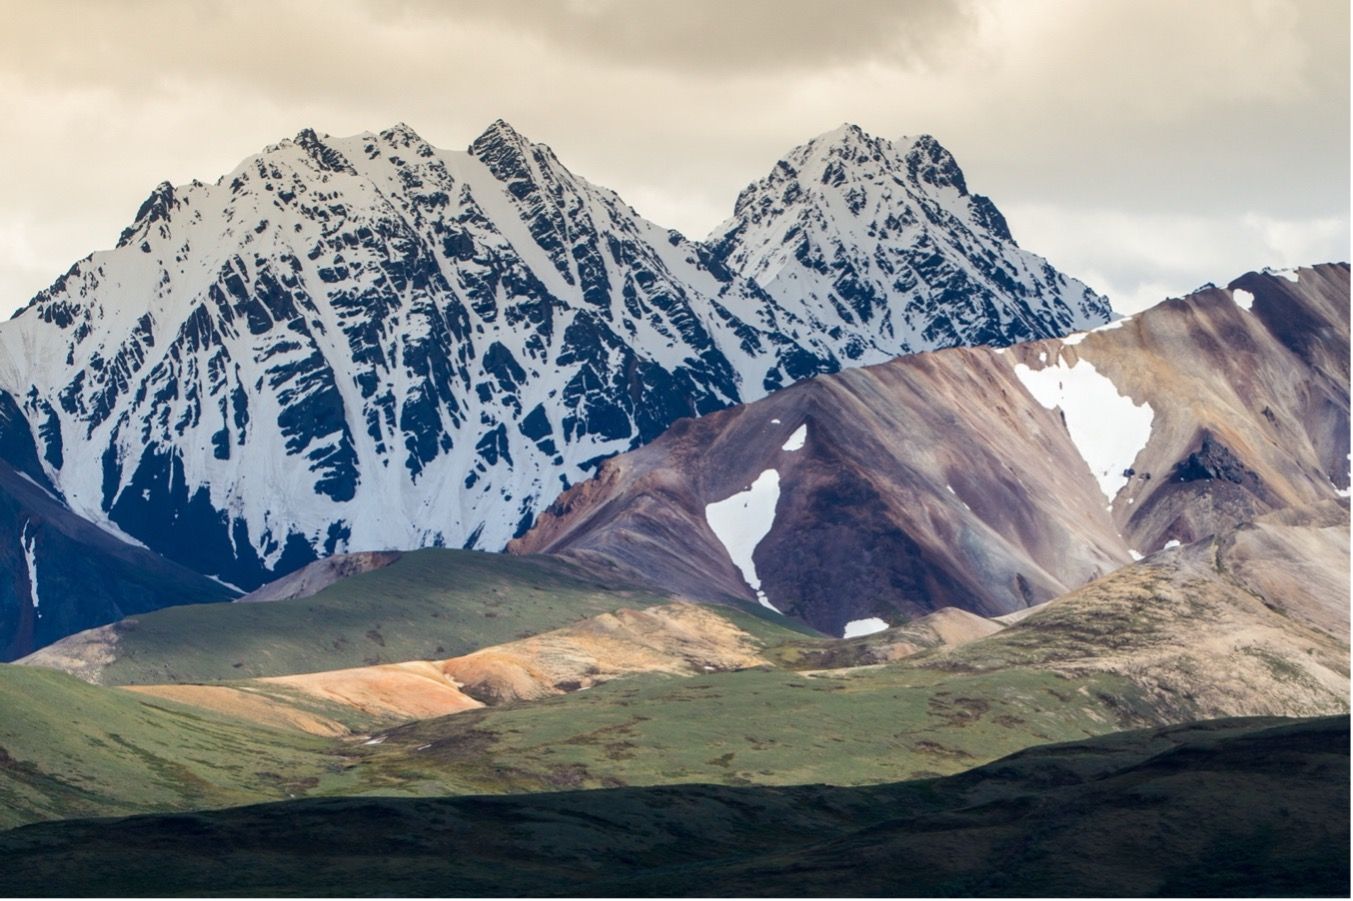 Las incomparables vistas del Denali National Park que enamoraron a Christopher McCandless en Hacia rutas salvajes.